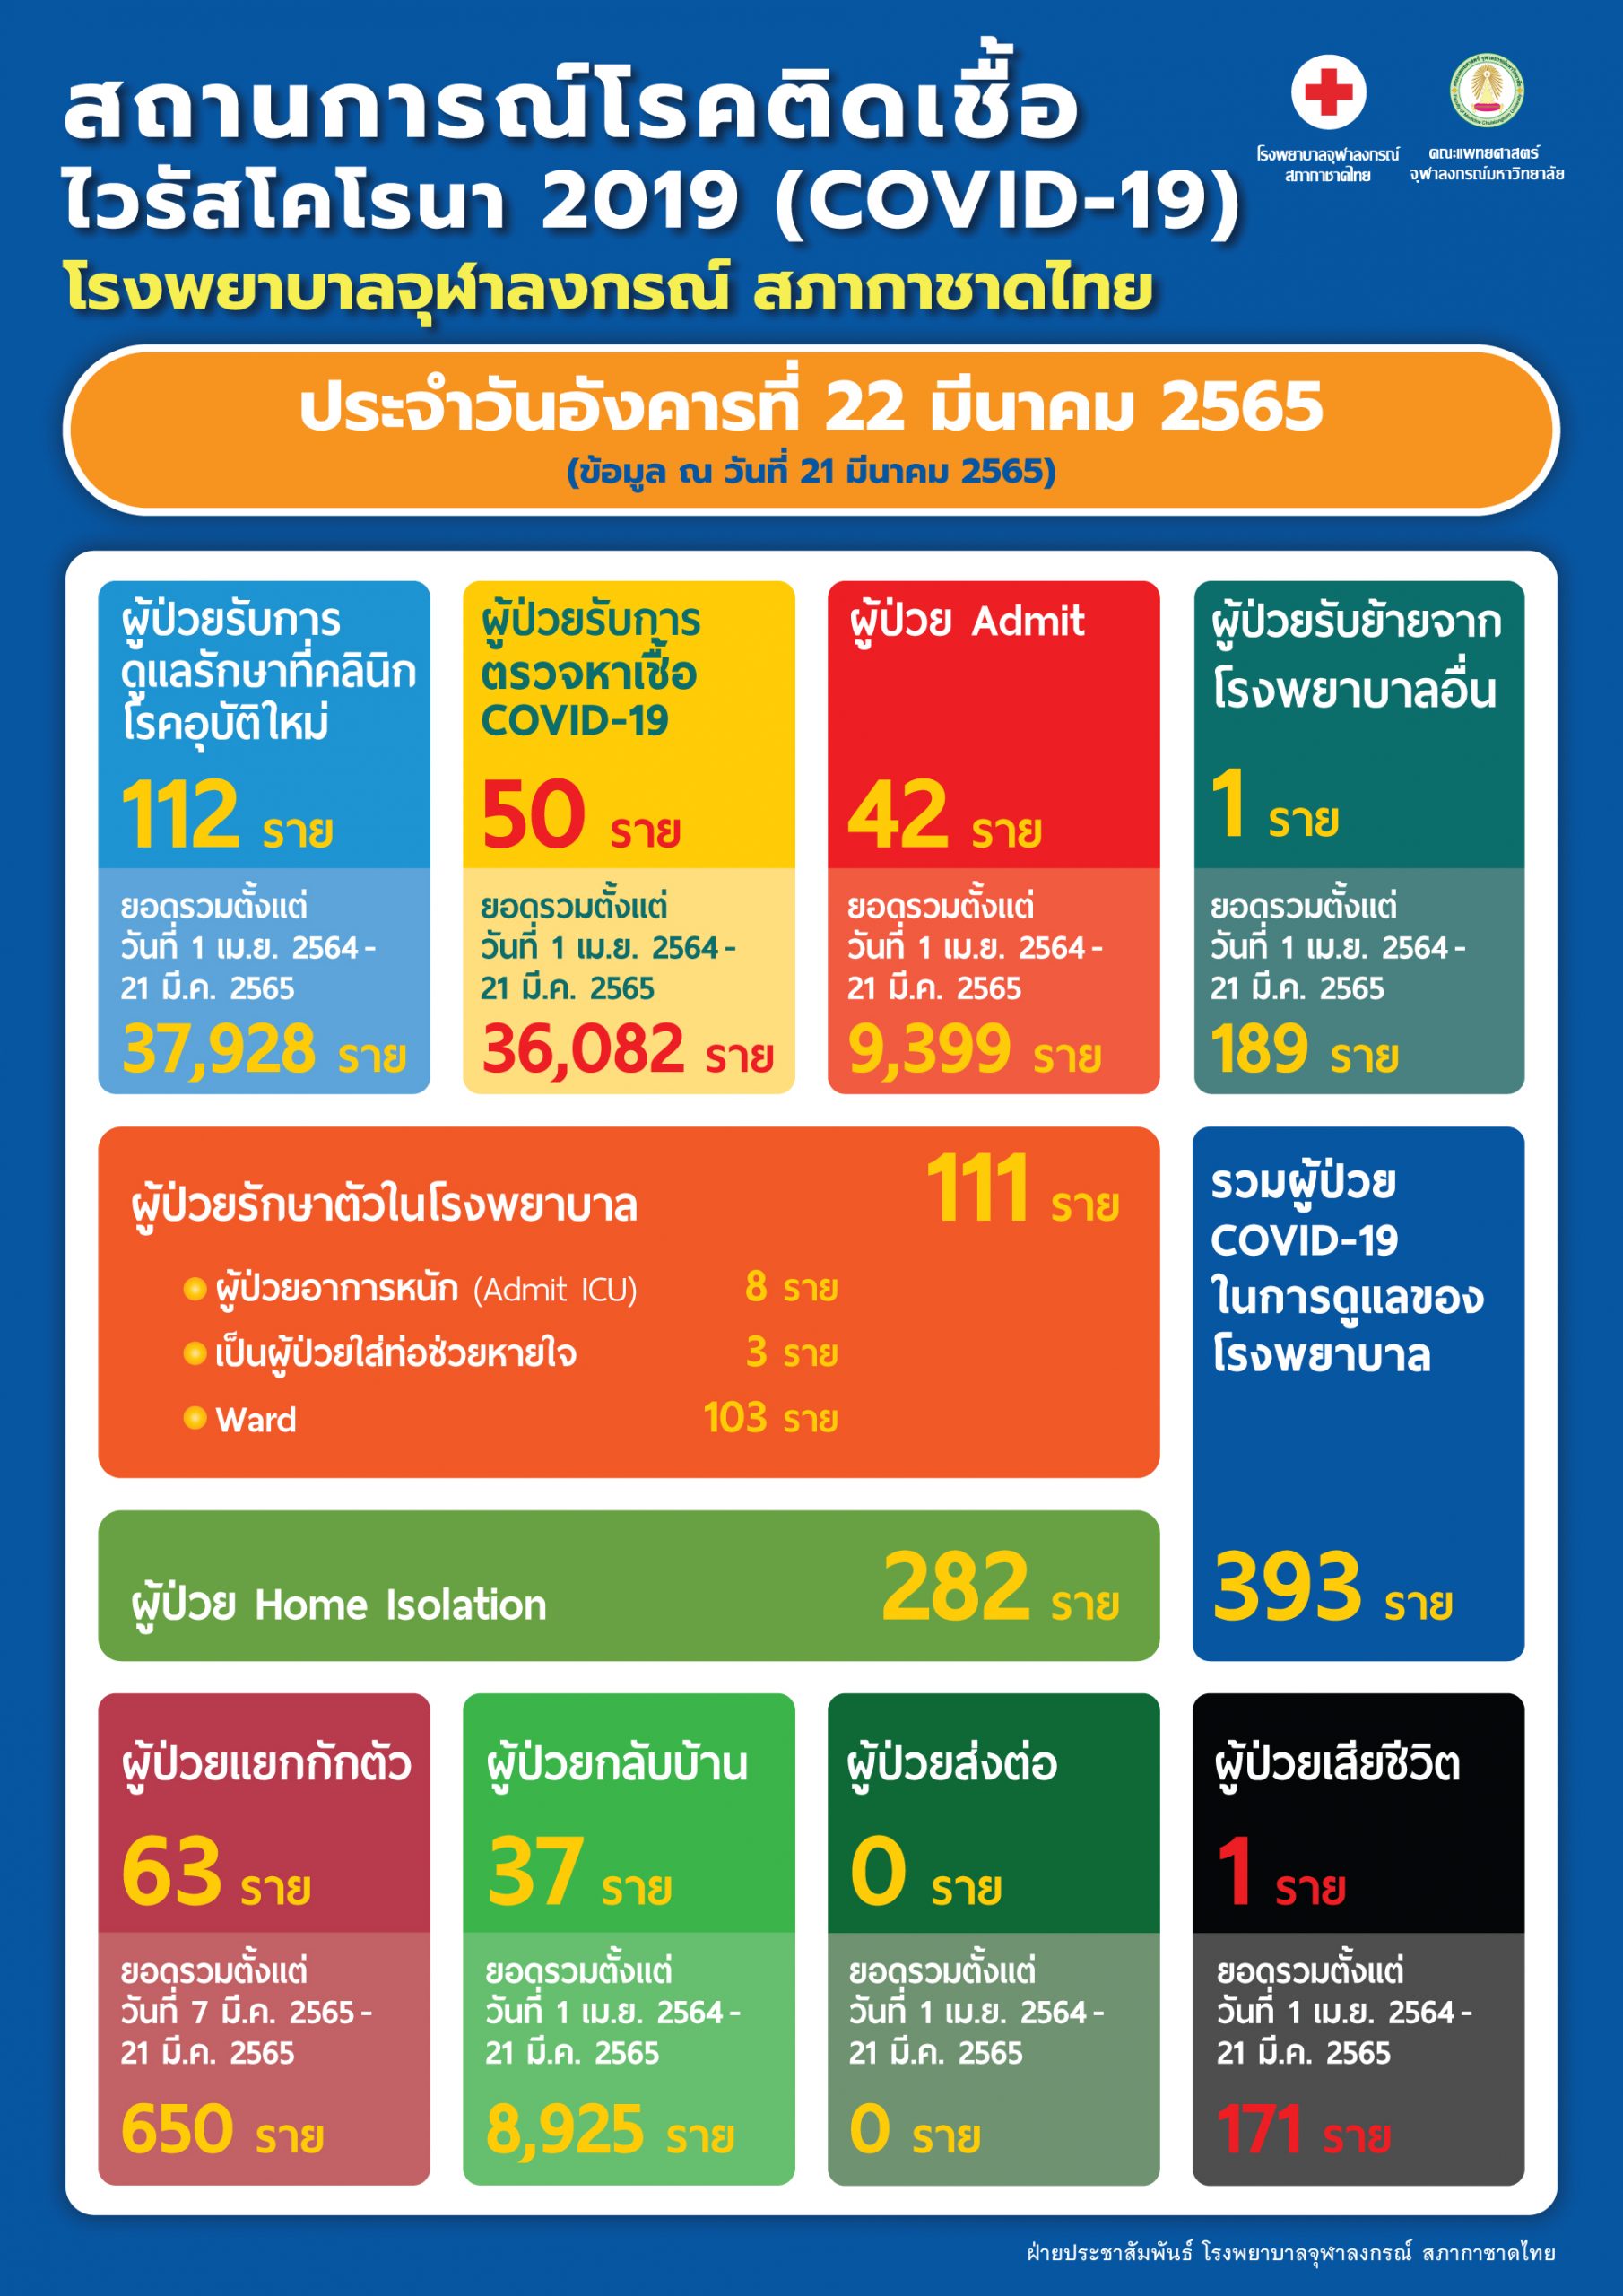 สถานการณ์โรคติดเชื้อไวรัสโคโรนา 2019 (COVID-19) โรงพยาบาลจุฬาลงกรณ์ สภากาชาดไทย ประจำวันอังคารที่ 22 มีนาคม 2565